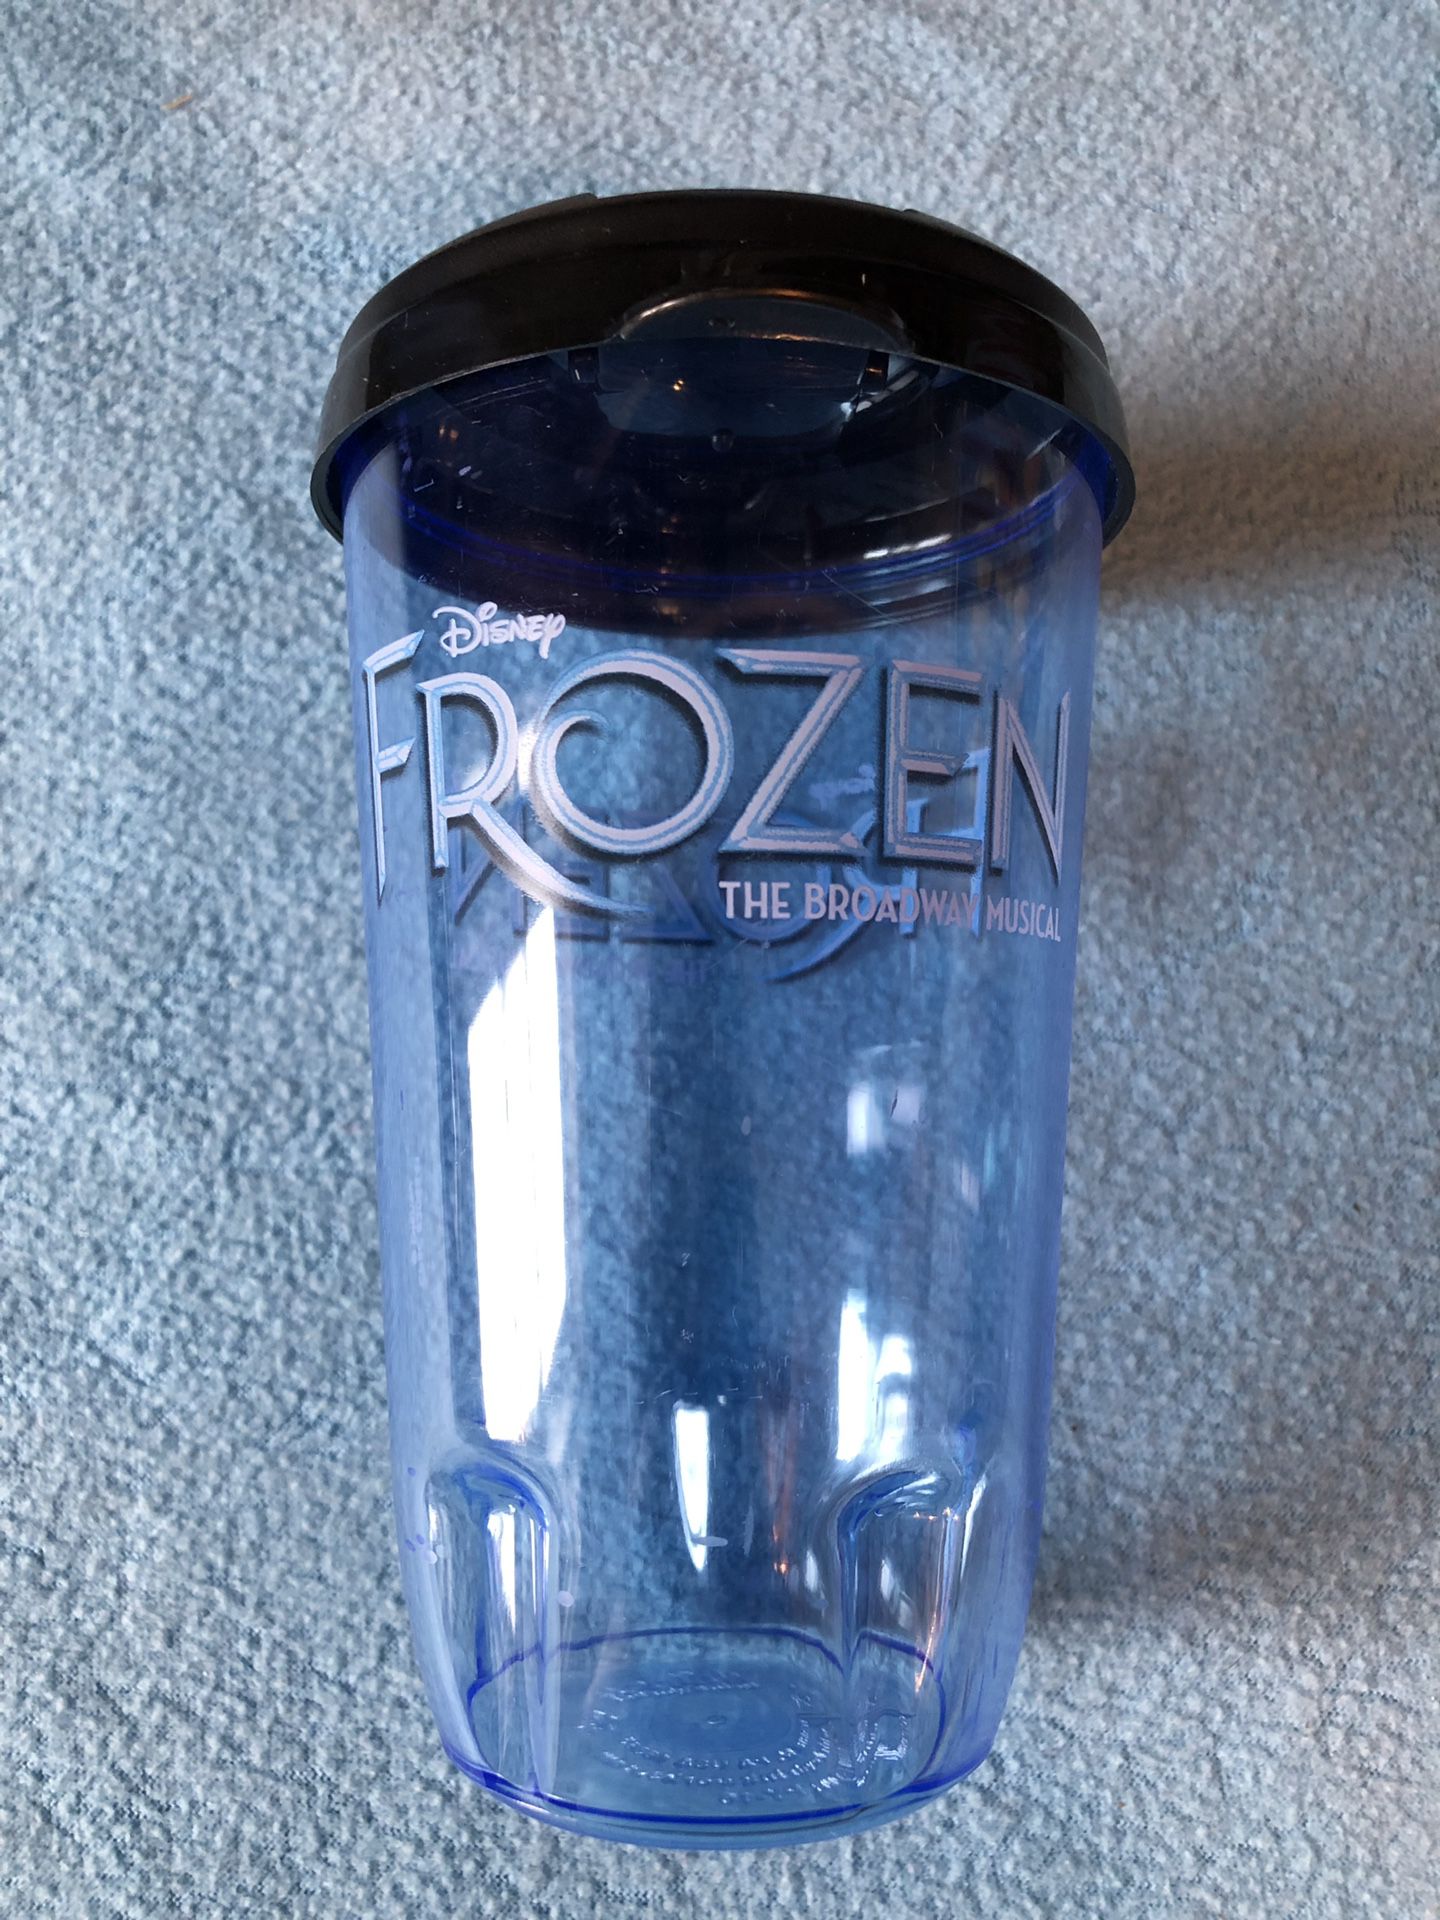 Frozen Disney broadway musical playbill Cup